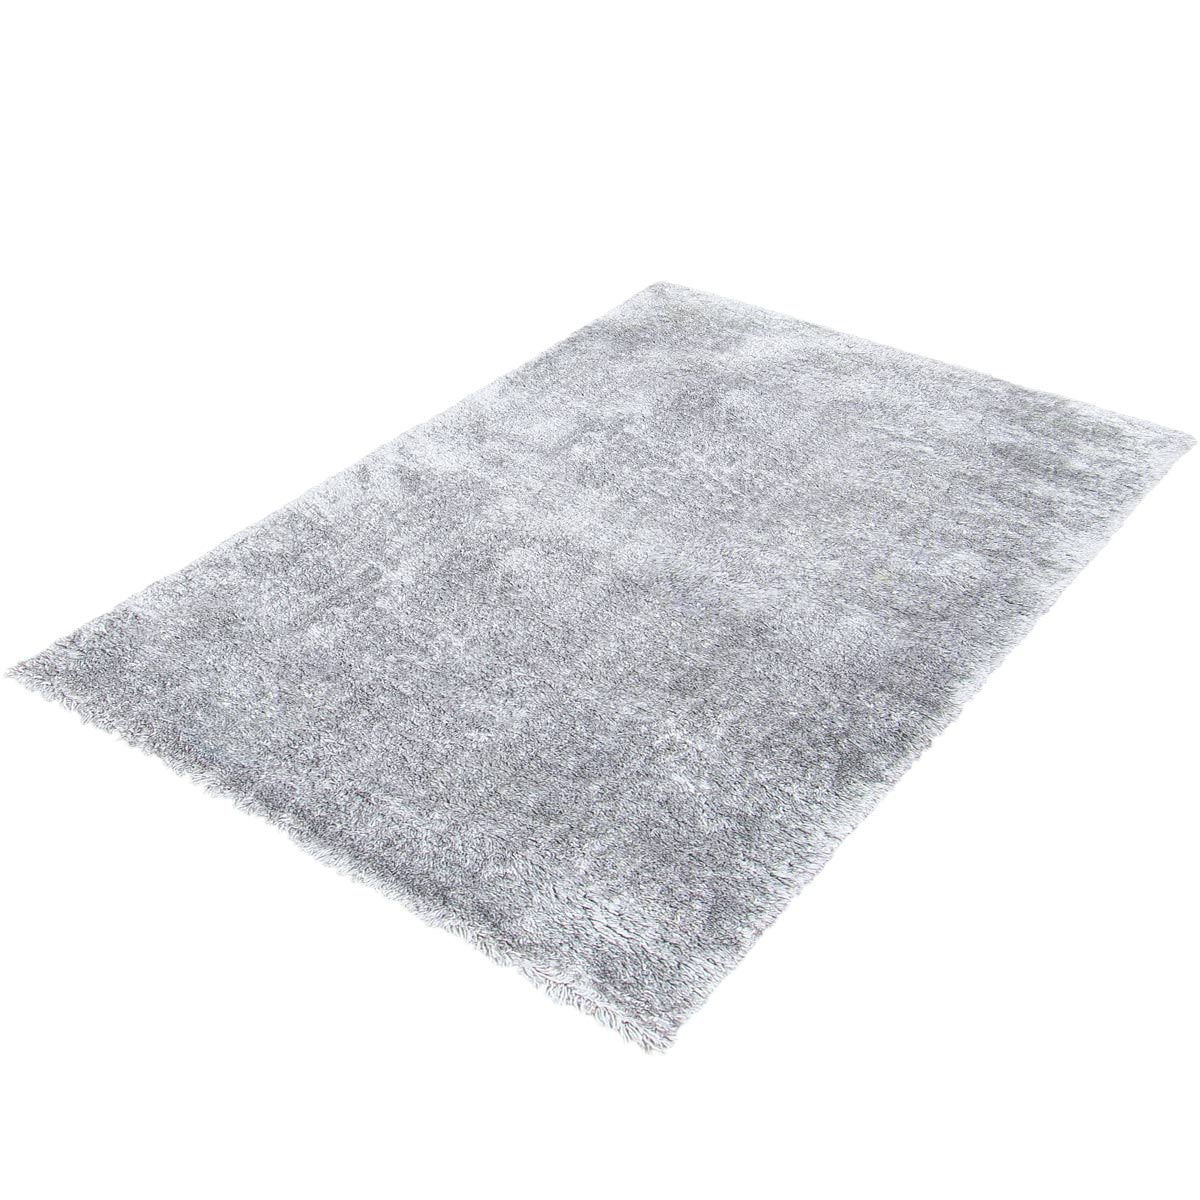 שטיח שאגי קטיפה 01 אפור | השטיח האדום